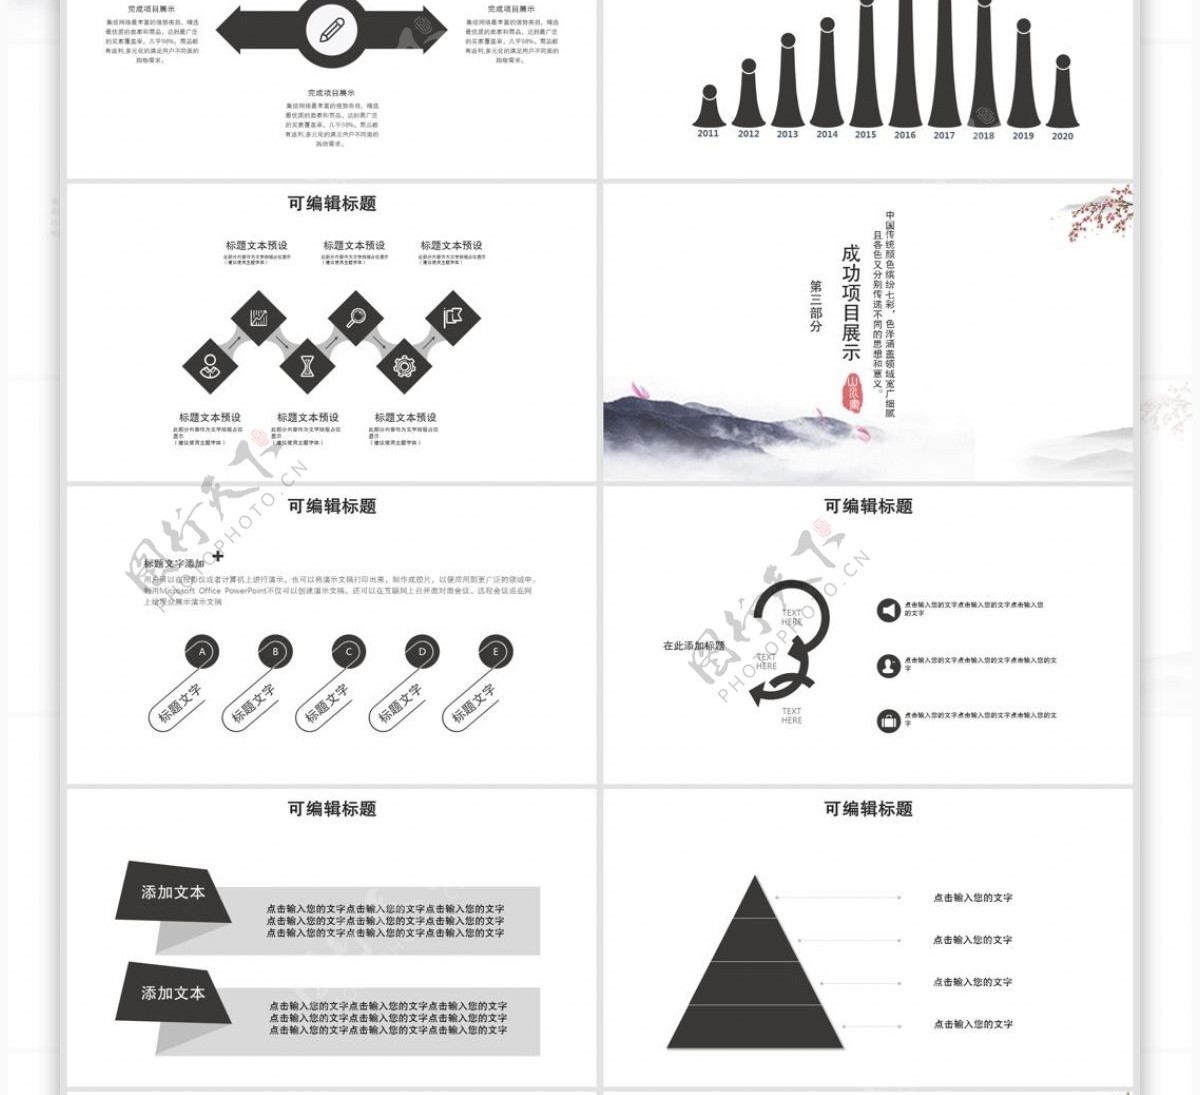 65中国风企业文化宣传PPT模板